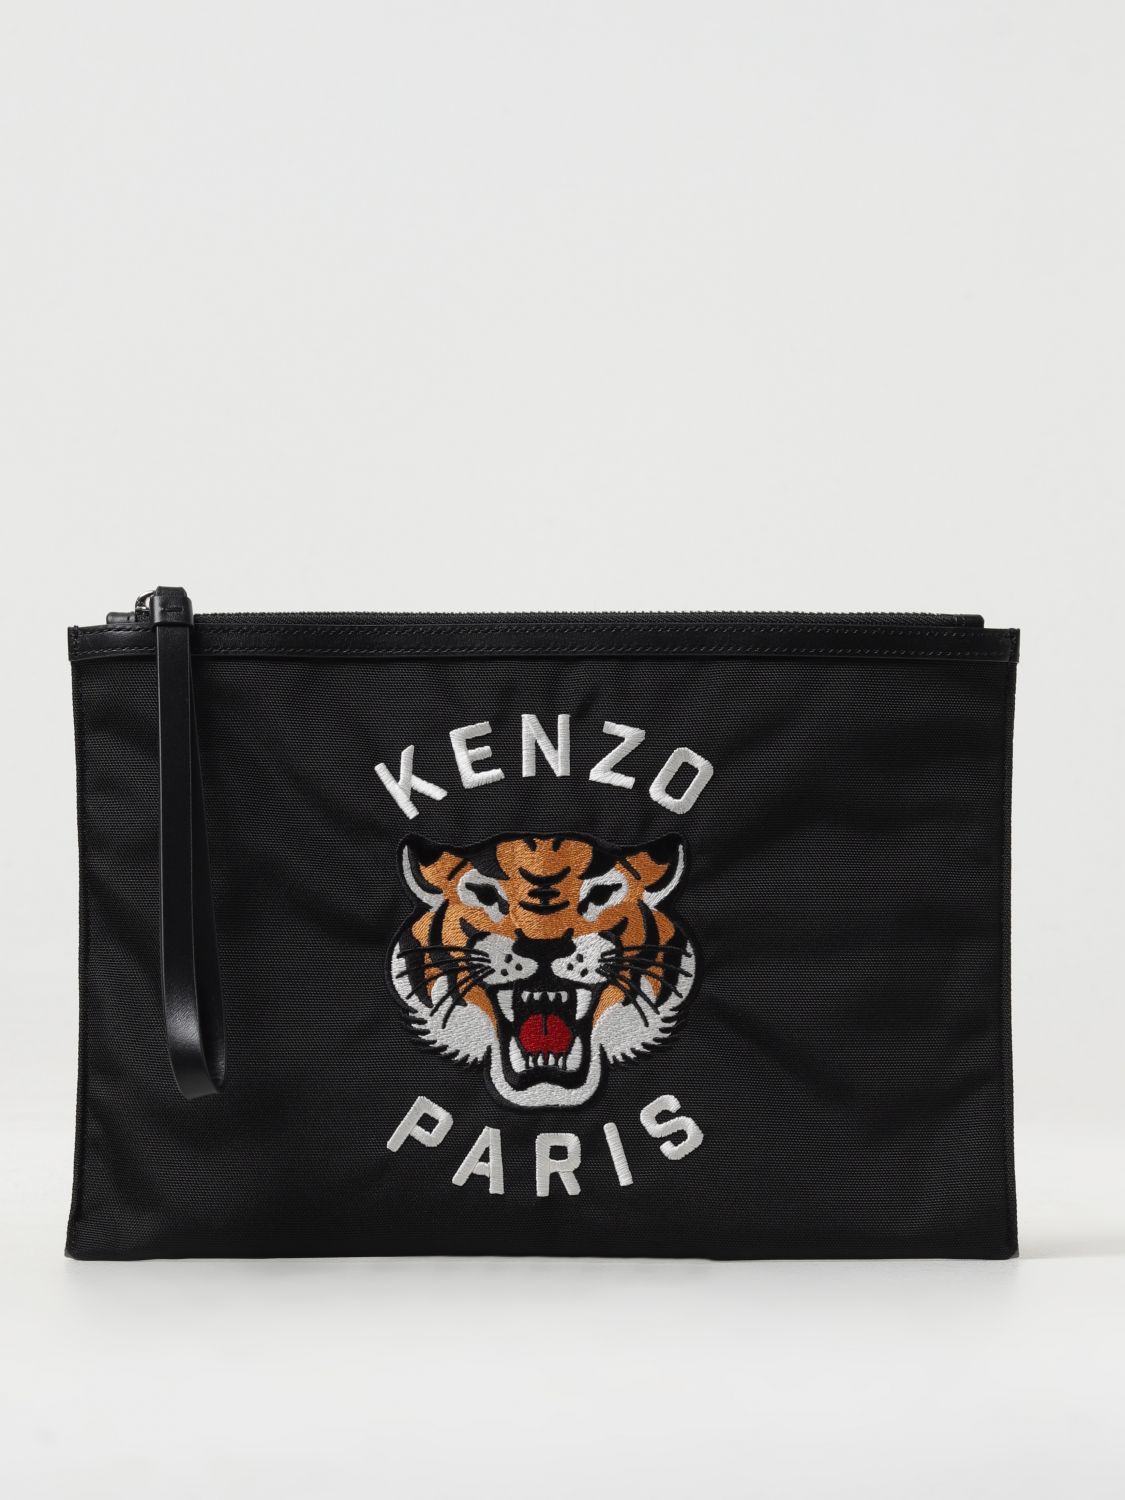 Kenzo Briefcase  Men Color Black